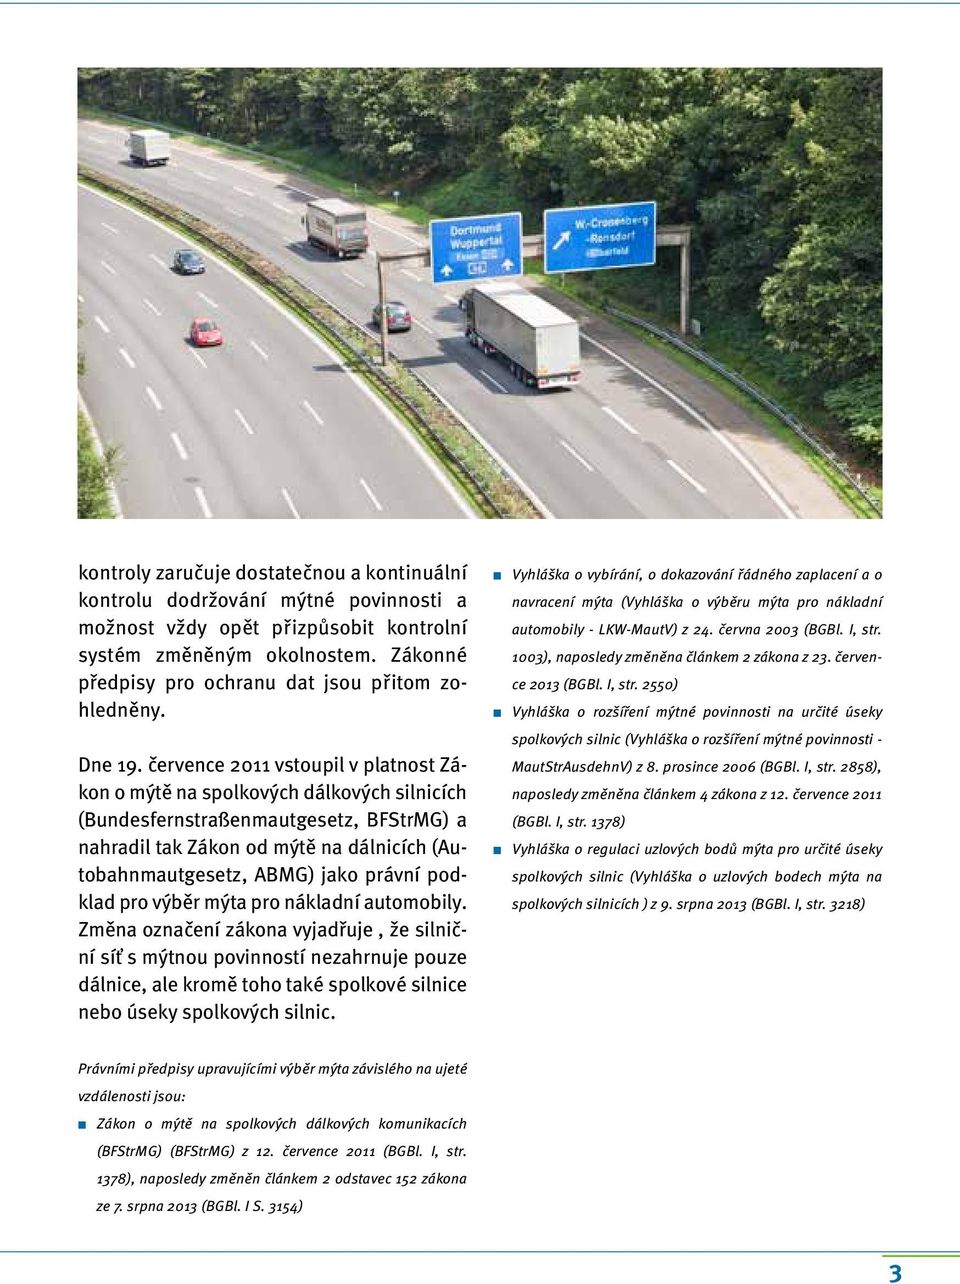 července 2011 vstoupil v platnost Zákon o mýtě na spolkových dálkových silnicích (Bundesfernstraßenmautgesetz, BFStrMG) a nahradil tak Zákon od mýtě na dálnicích (Autobahnmautgesetz, ABMG) jako